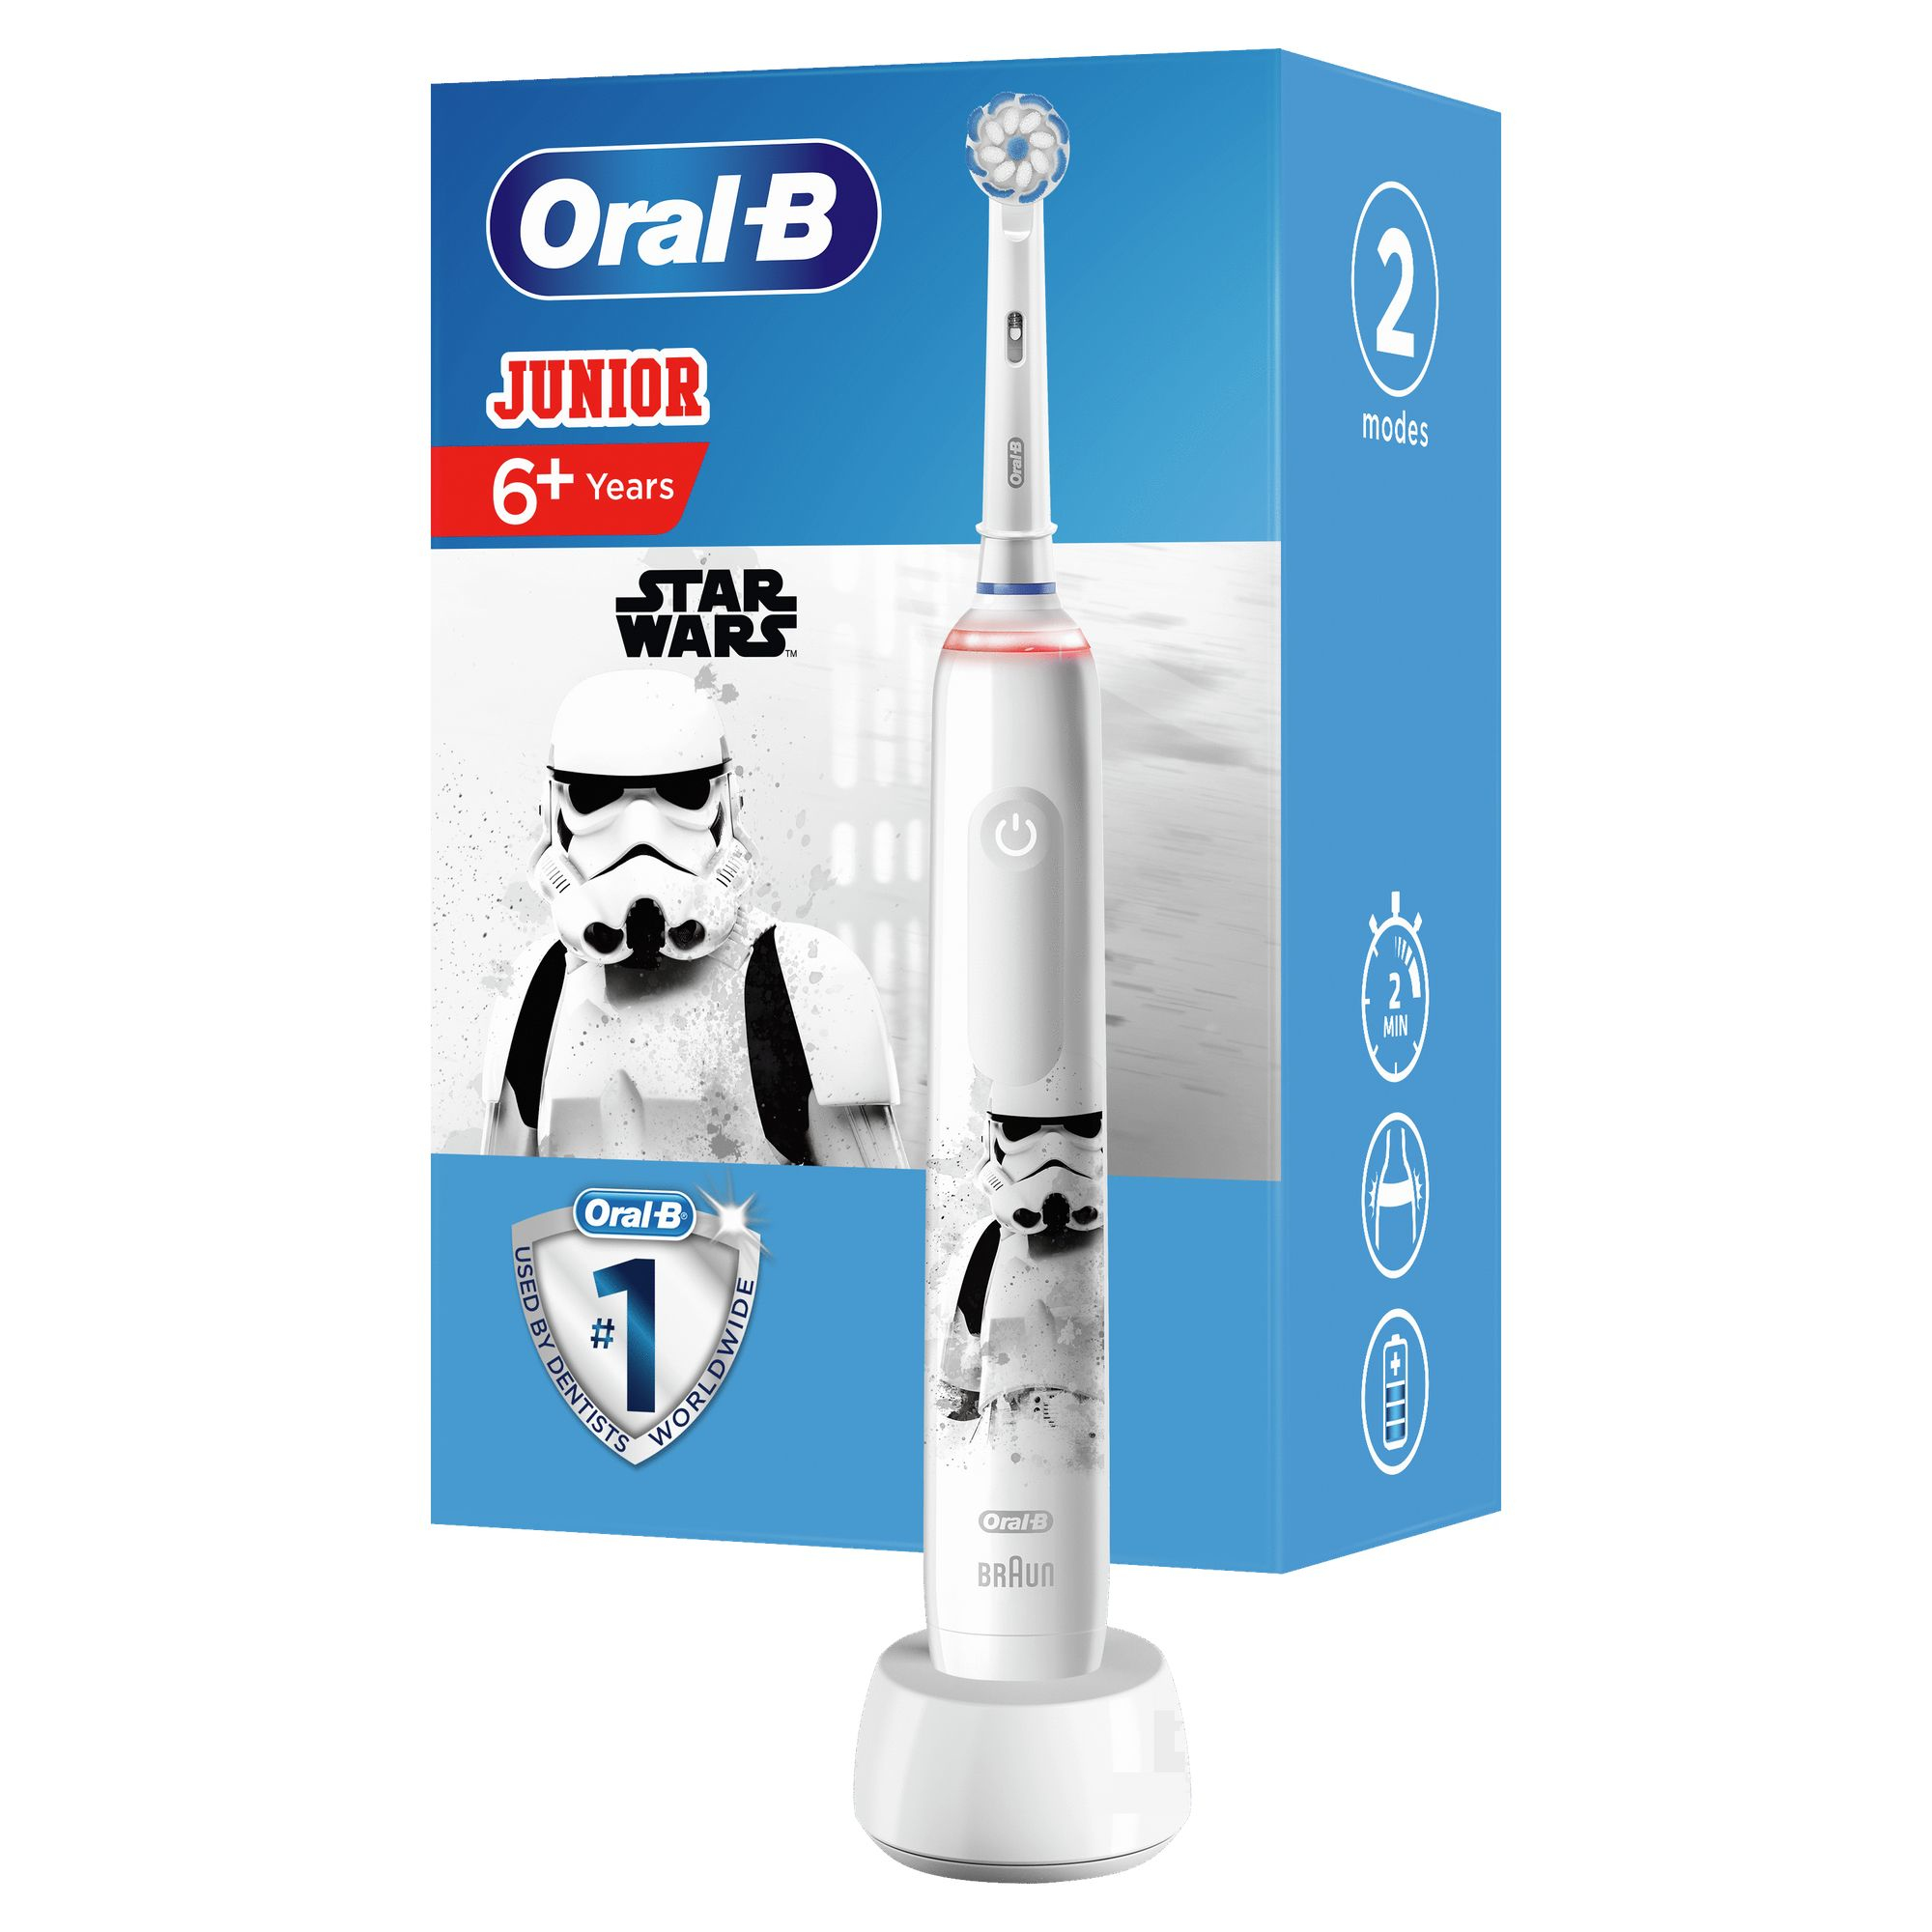 Oral-B Oral-B Junior Elektrische Tandenborstel Star Wars Powered By Braun